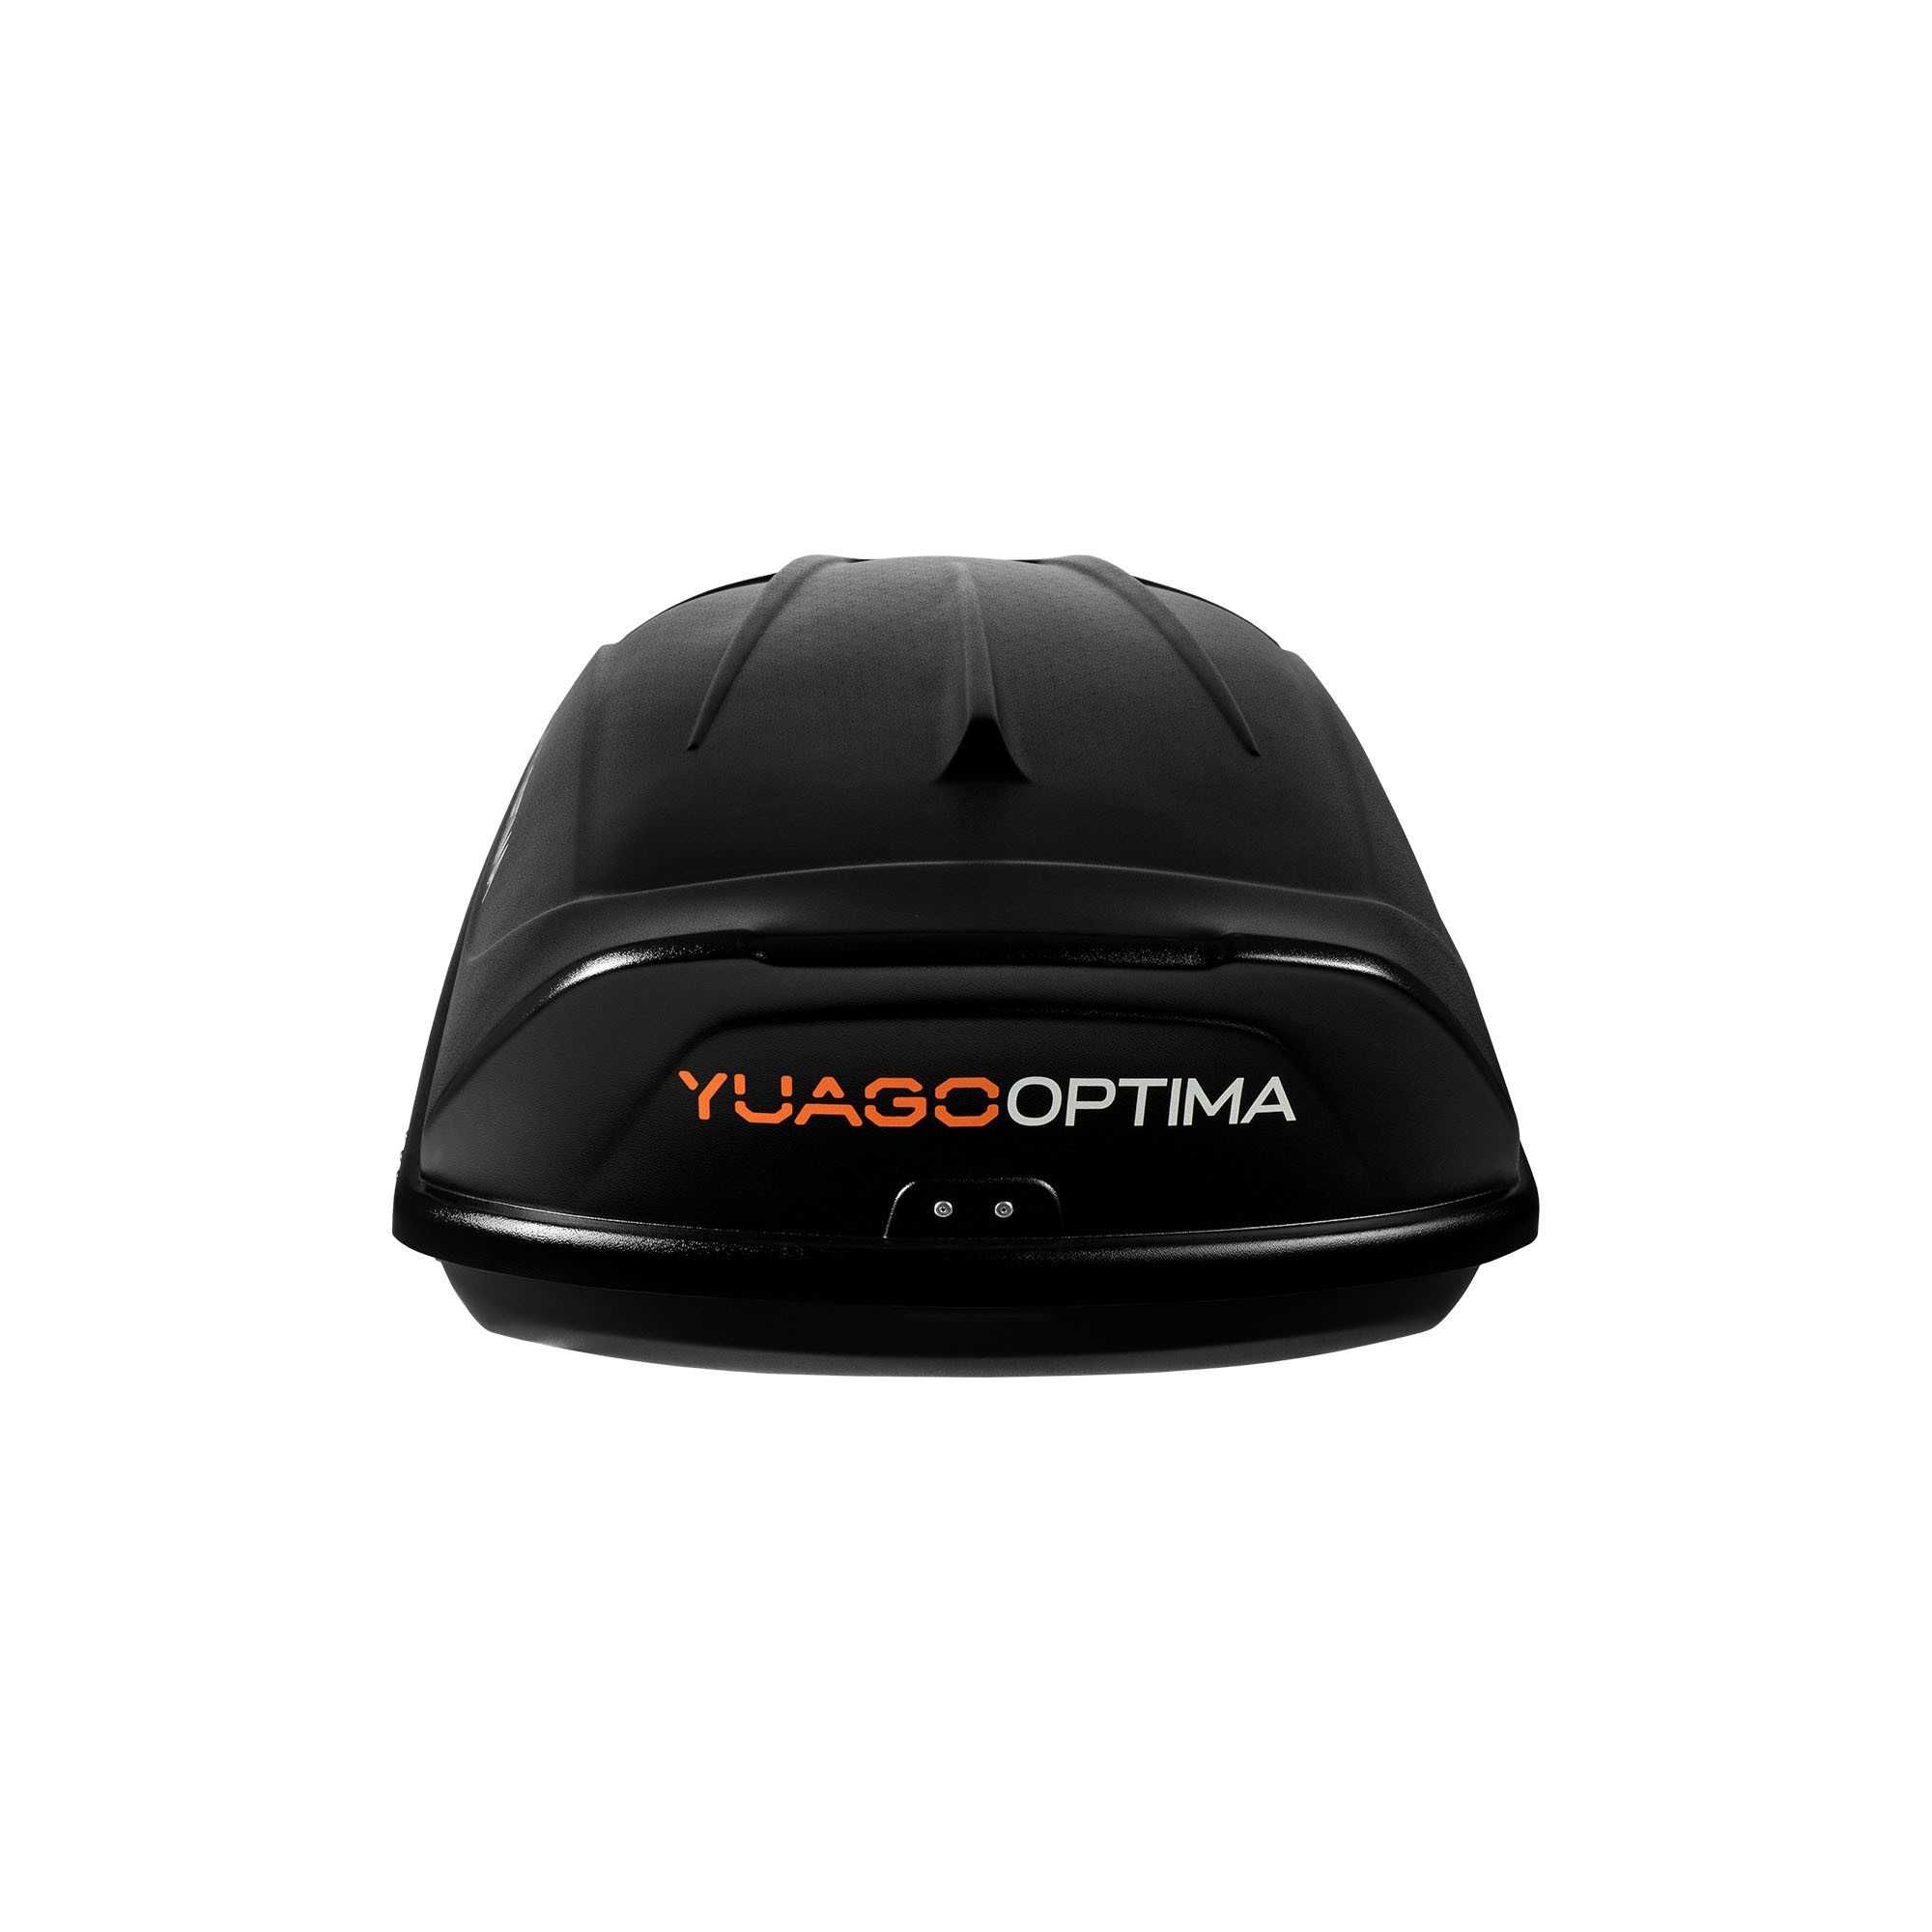 Автобокс Yuago Optima 390л , багажник, авто бокс